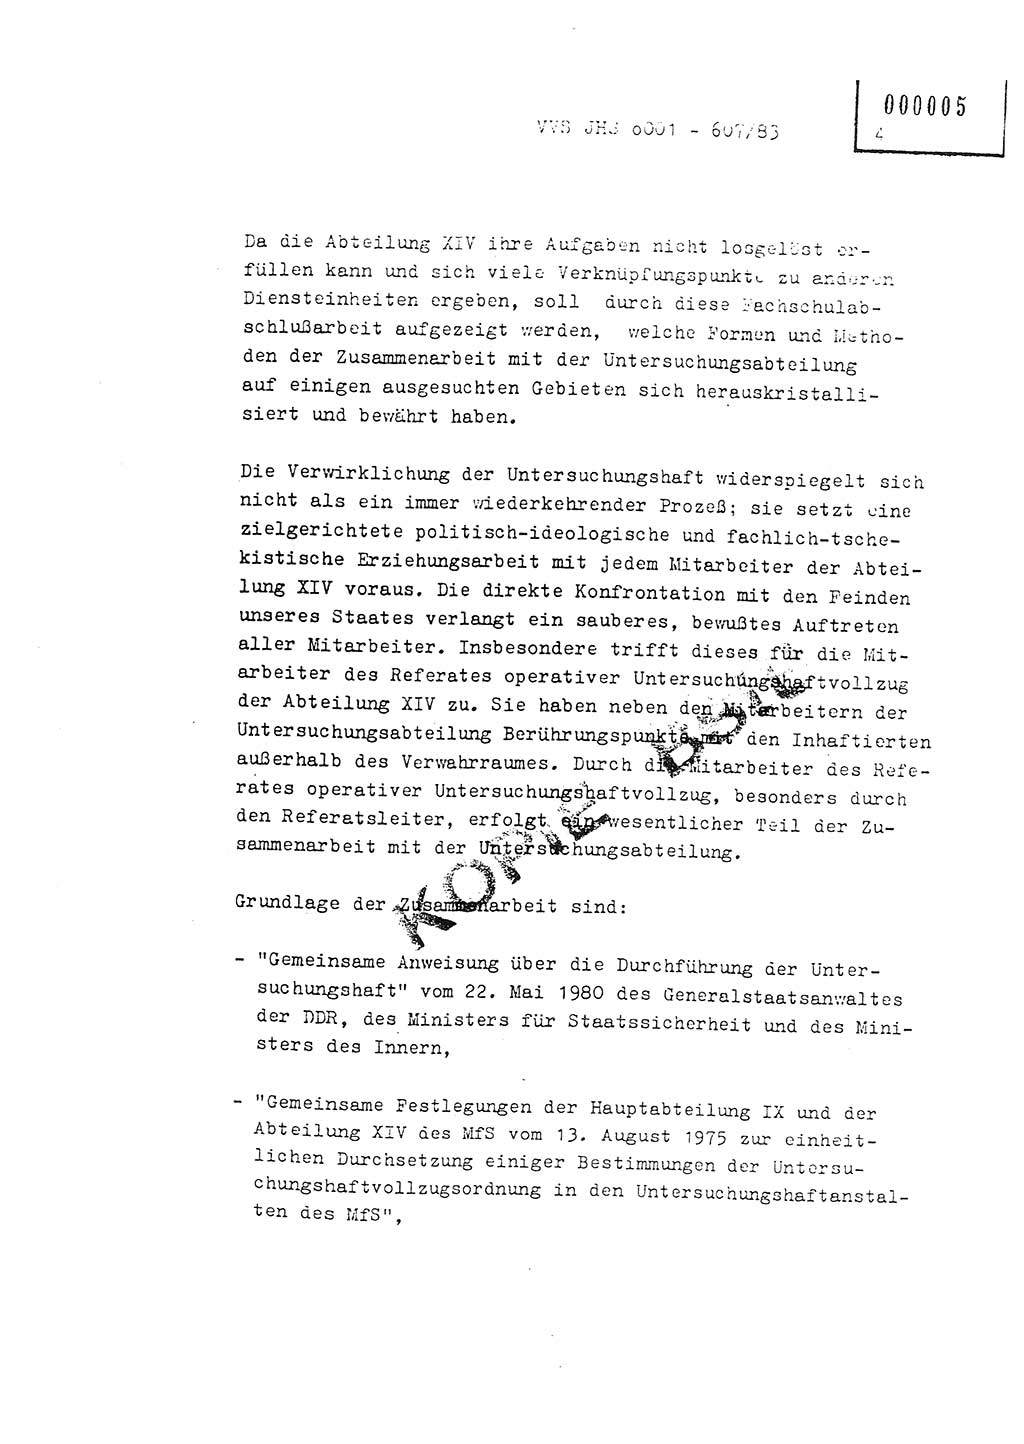 Fachschulabschlußarbeit Oberleutnant Hans-Joachim Saltmann (BV Rostock Abt. ⅩⅣ), Ministerium für Staatssicherheit (MfS) [Deutsche Demokratische Republik (DDR)], Juristische Hochschule (JHS), Vertrauliche Verschlußsache (VVS) o001-607/83, Potsdam 1983, Seite 4 (FS-Abschl.-Arb. MfS DDR JHS VVS o001-607/83 1983, S. 4)